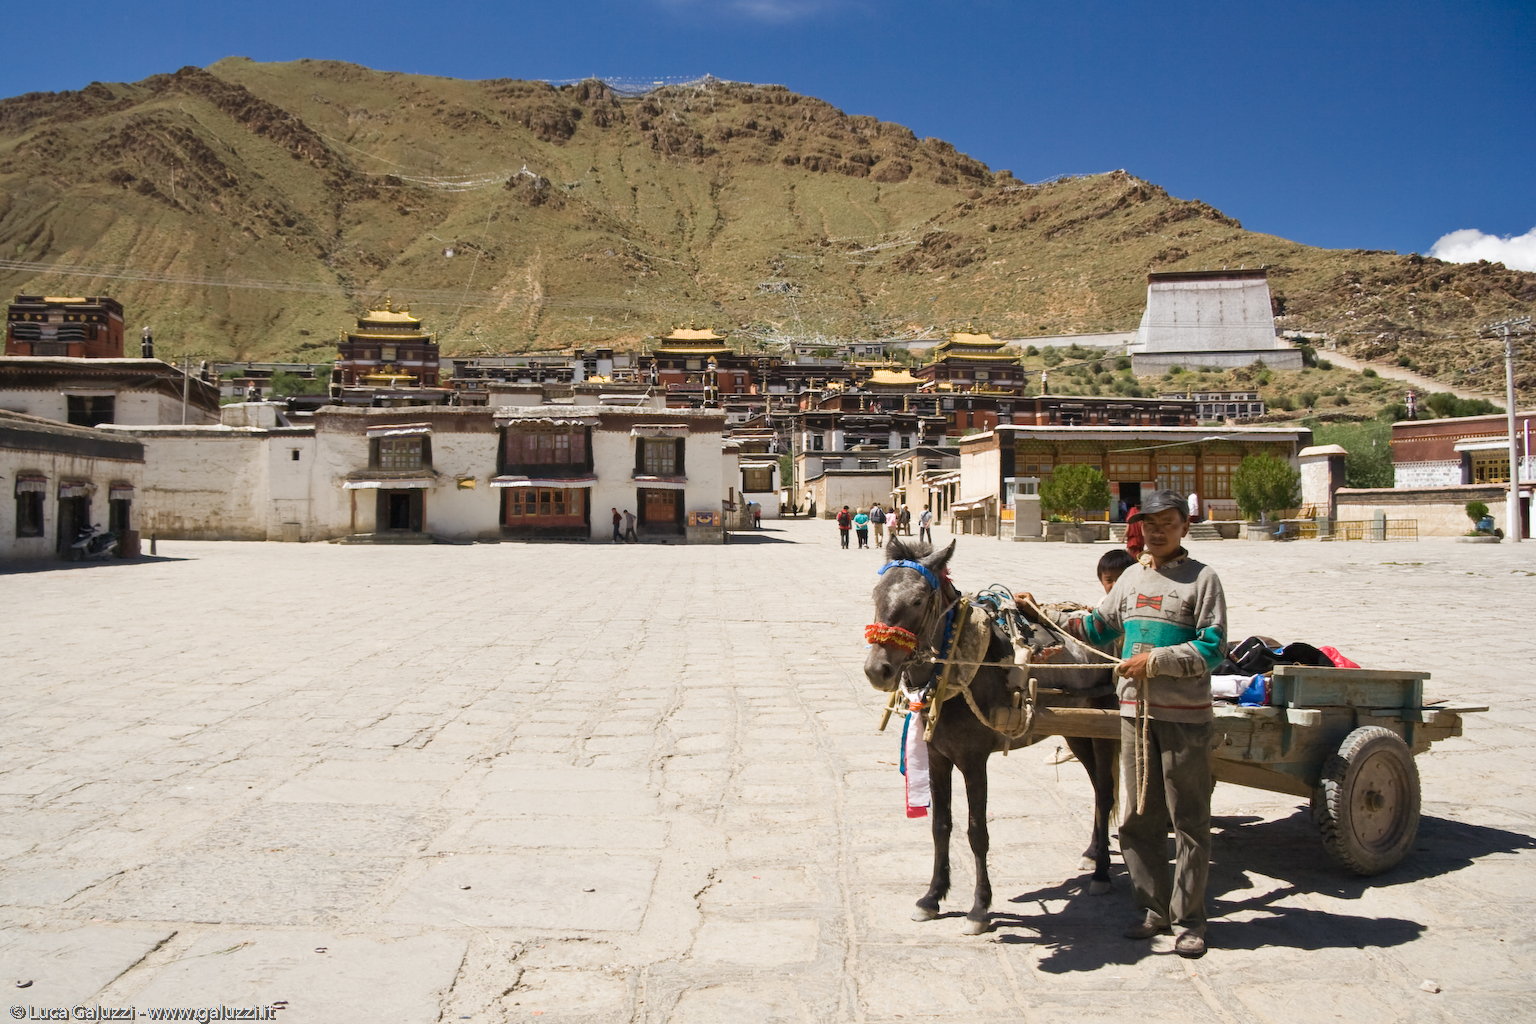 Il monastero di Tashilhunpo fu fondato nel 1447 da Gendun Drup il primo Dalai Lama